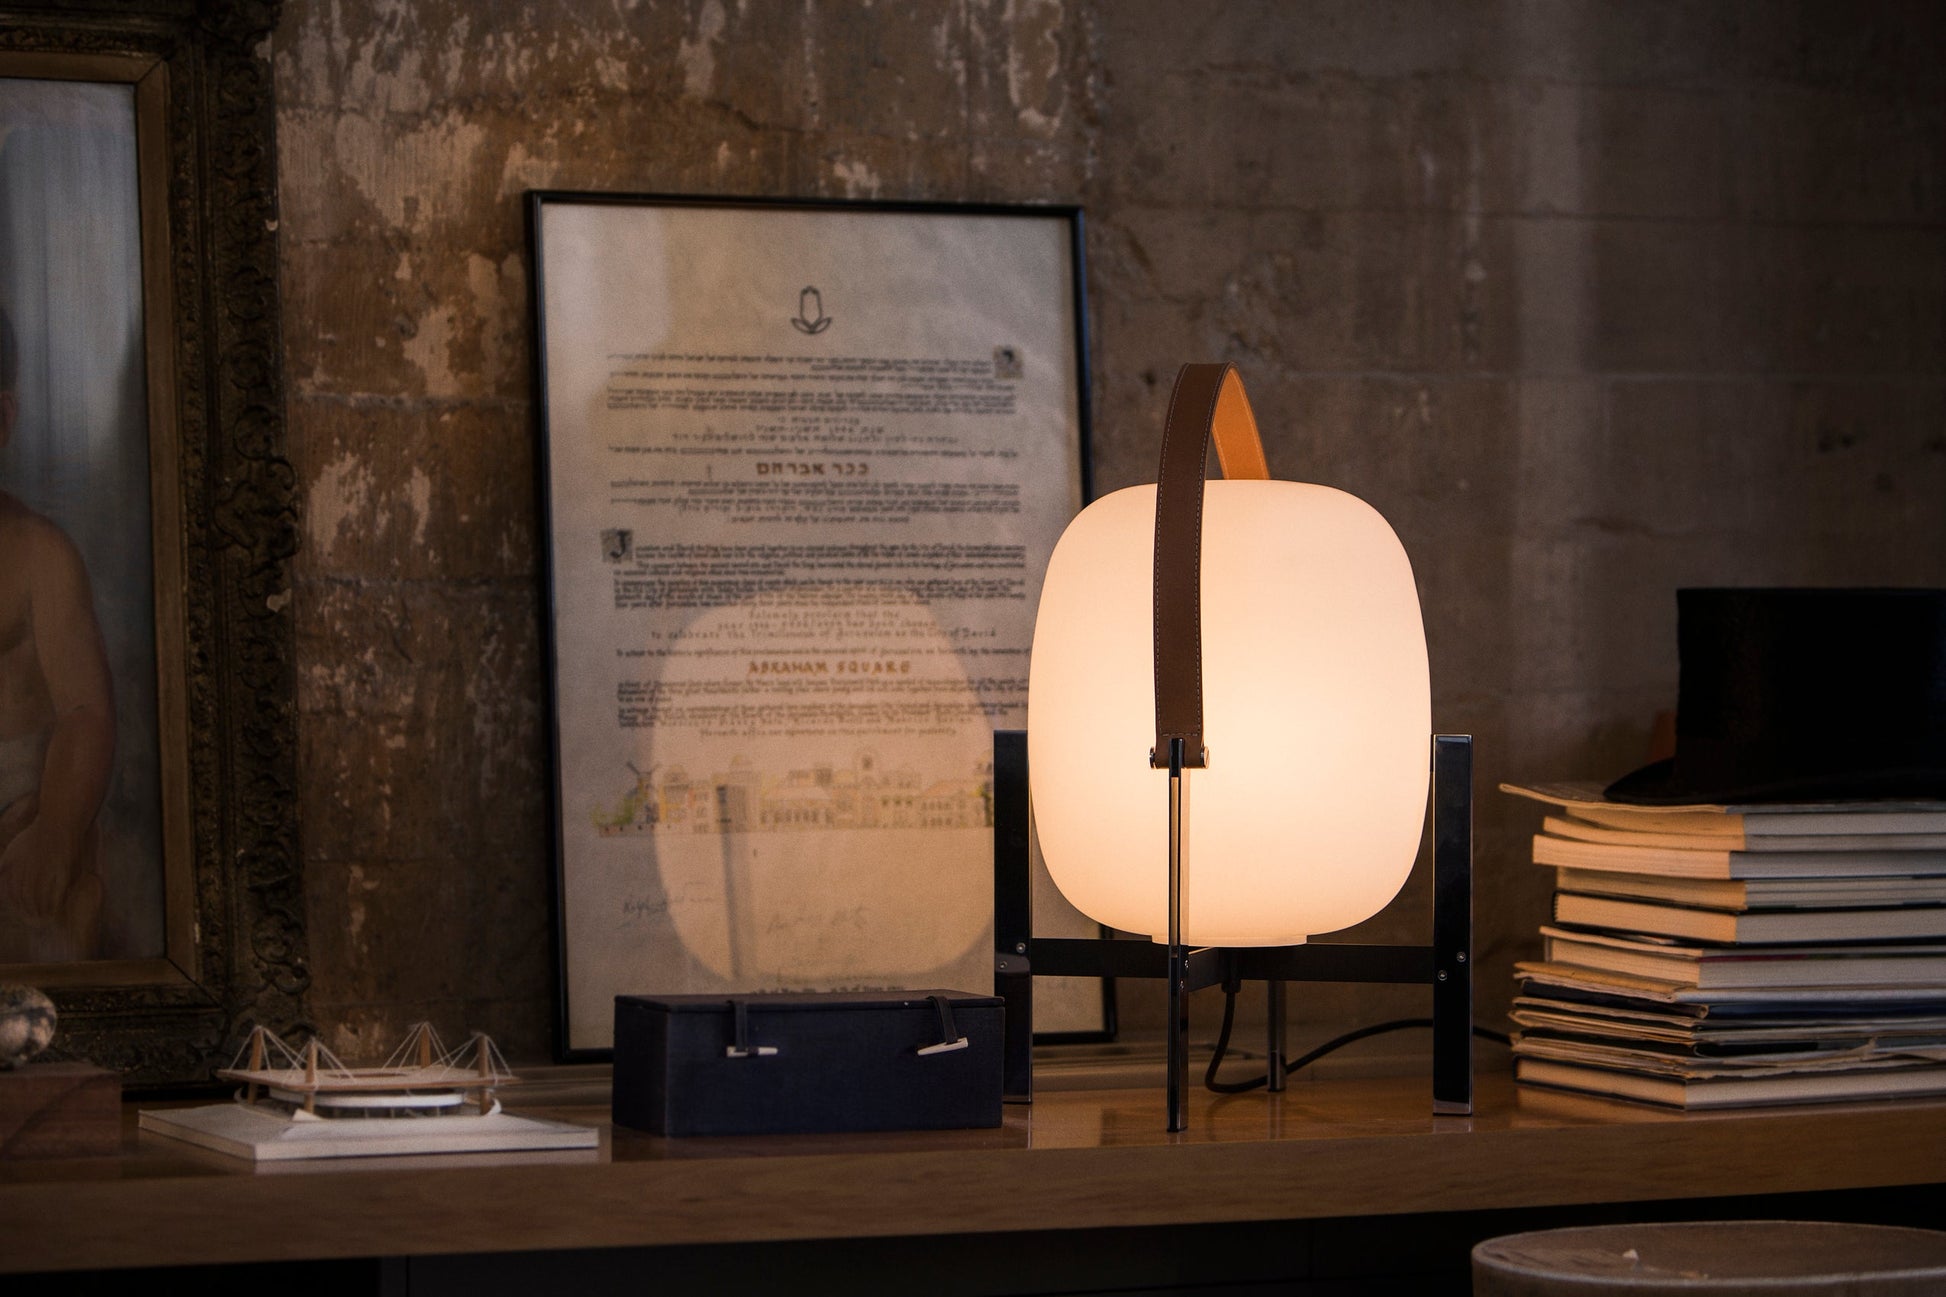 Santa & Cole Cesta Metalica Table Lamp